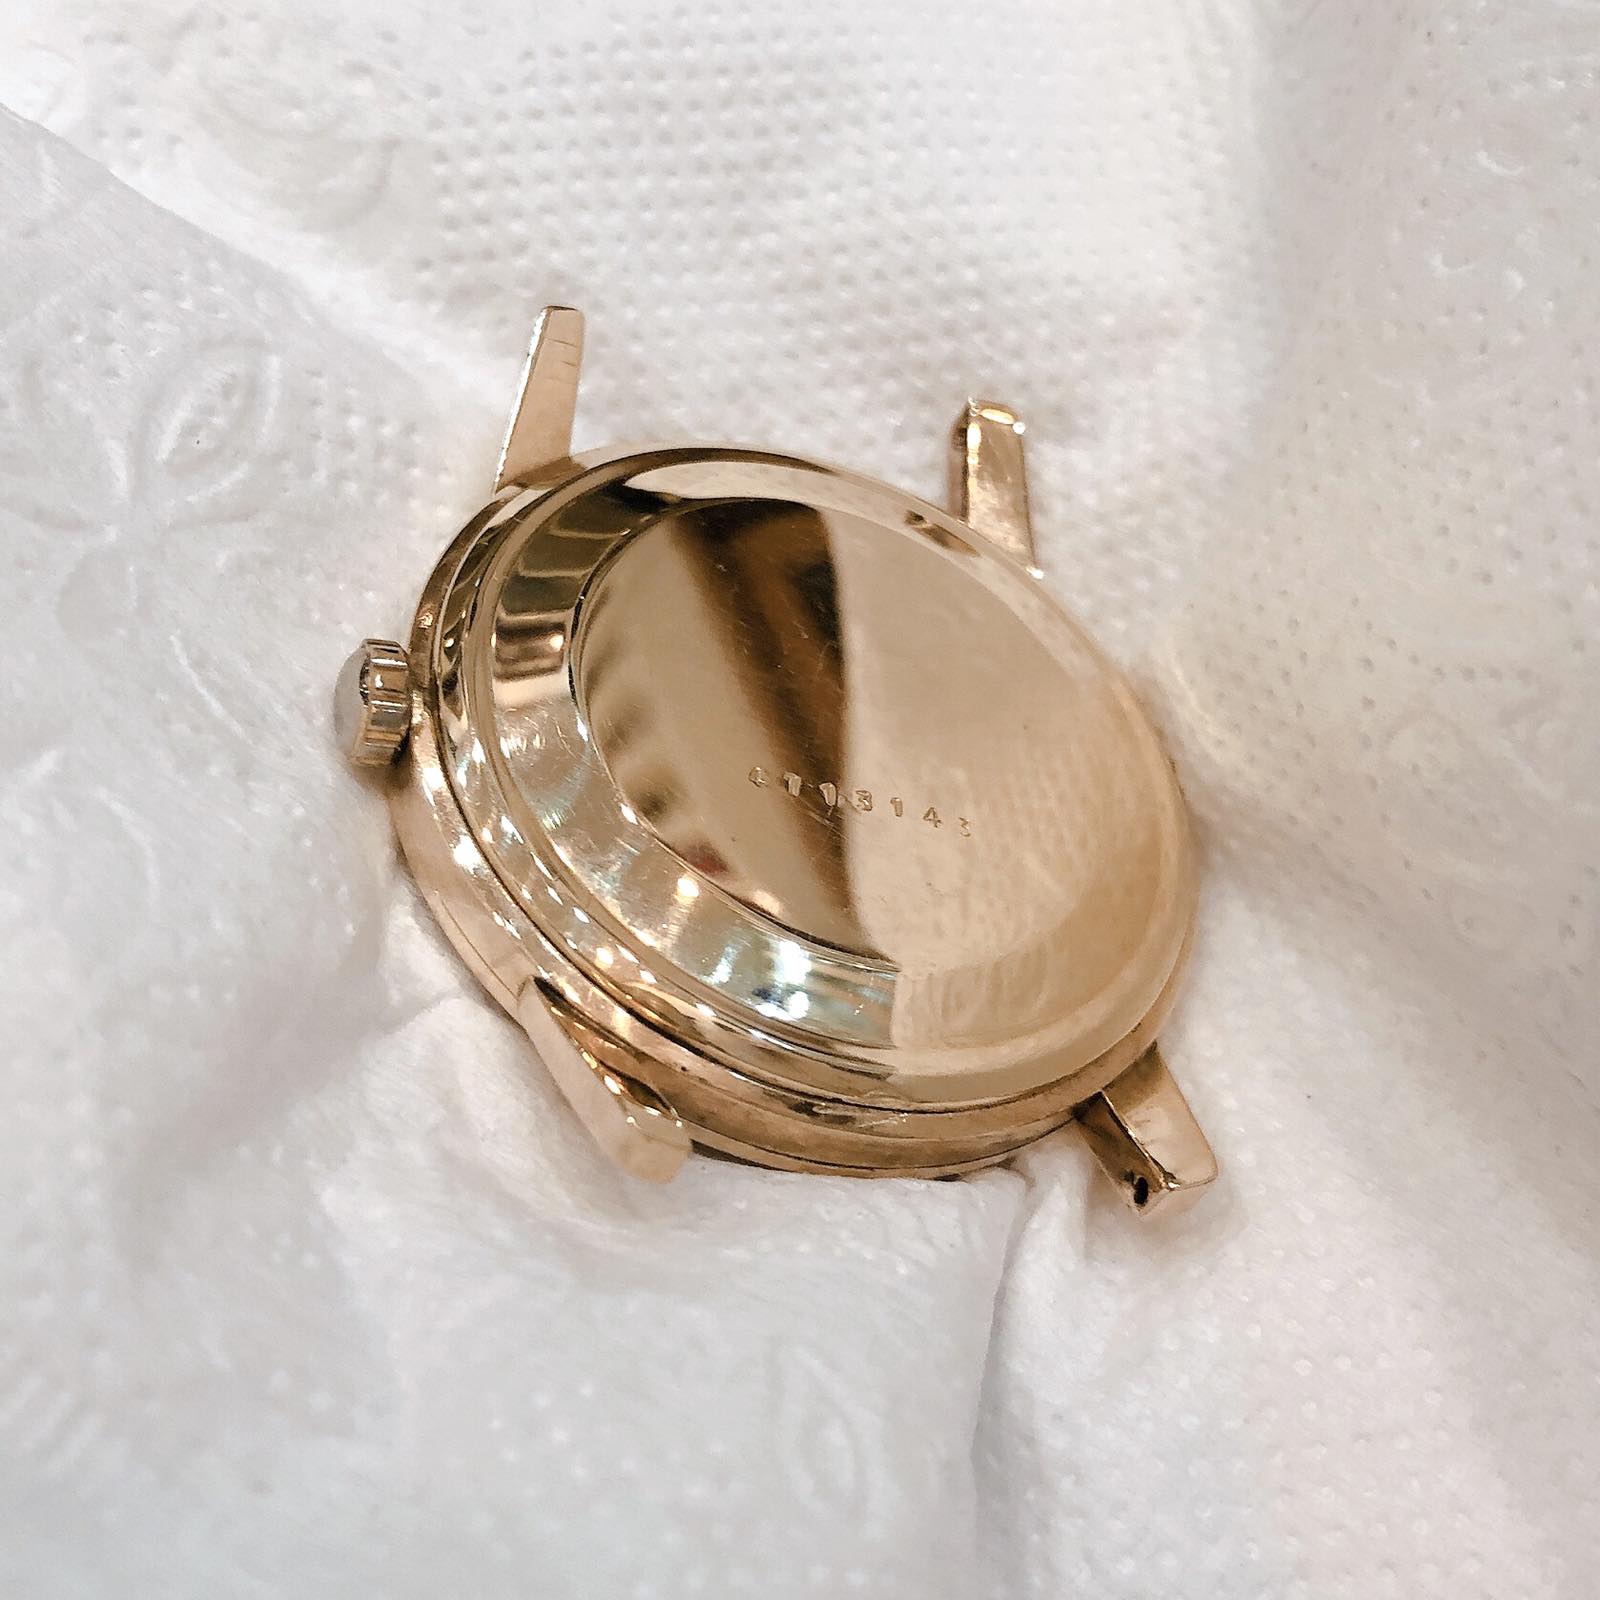 Đồng hồ cổ Seiko Lord Marvel phiên bản đặc biệt lên dây 14k goldfilled chính hãng Nhật Bản 